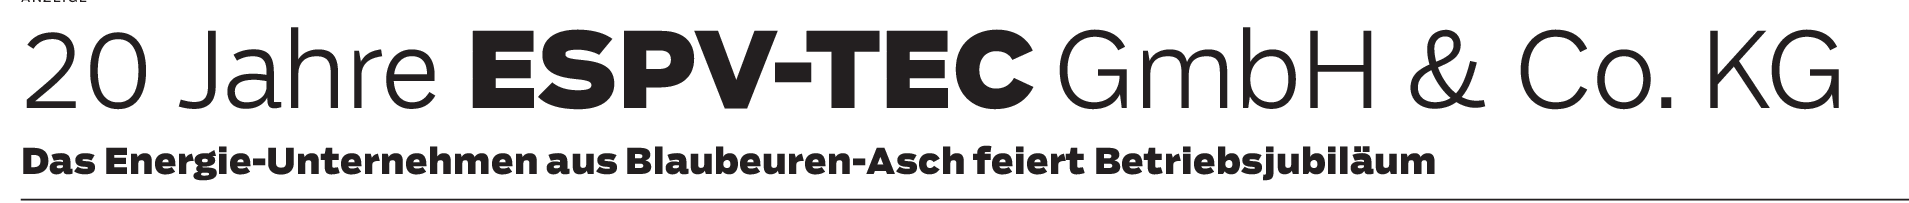 ESPV-TEC GmbH & Co. KG: Eine regionale Erfolgsgeschichte